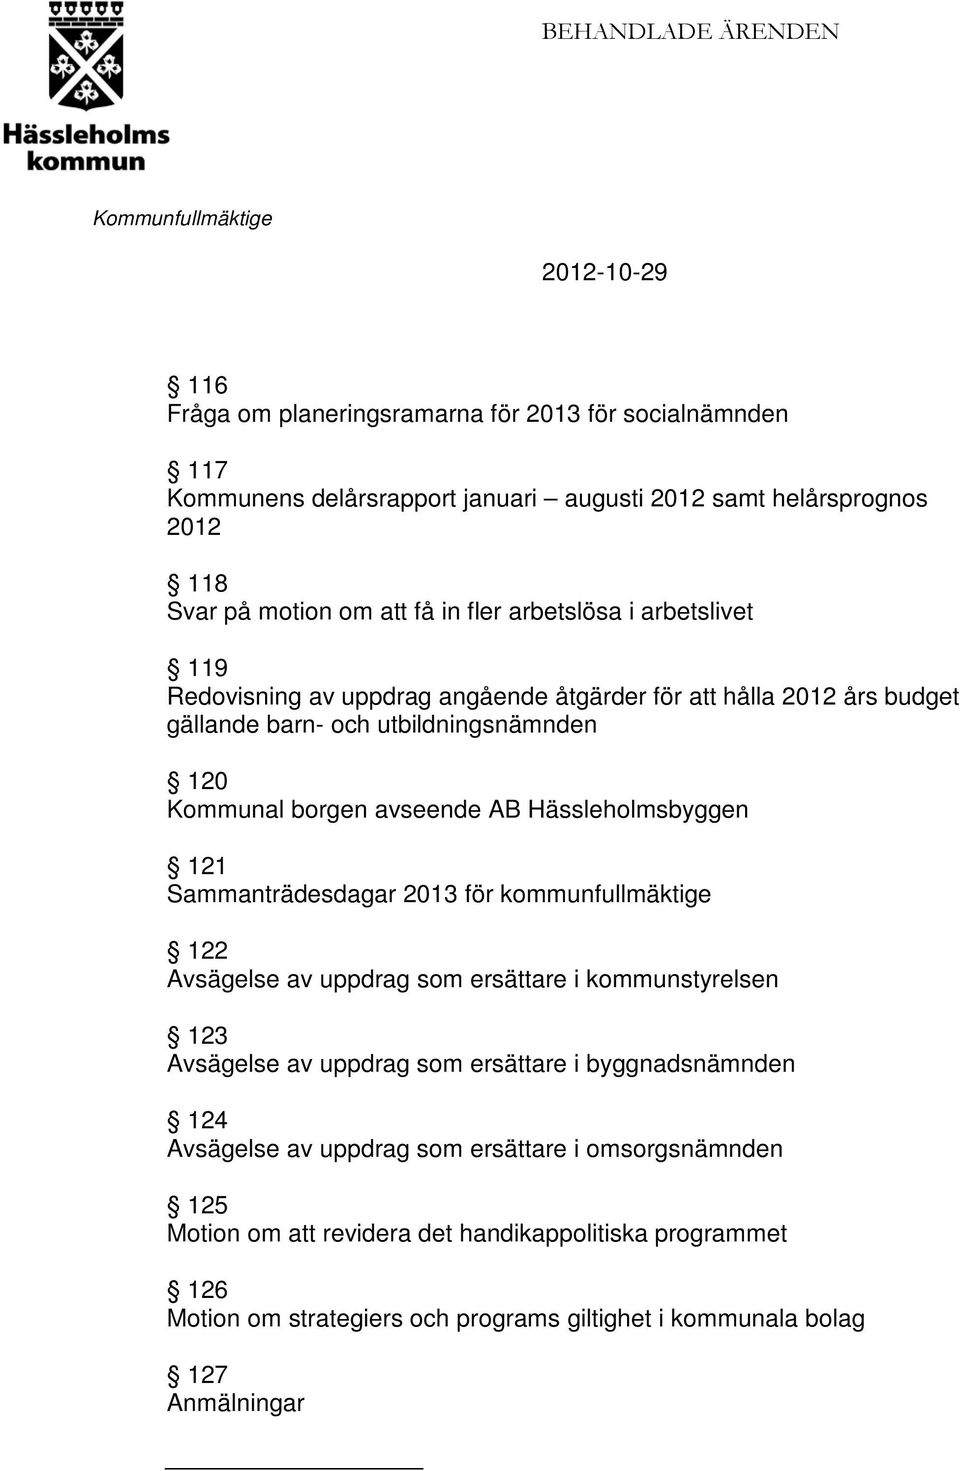 Hässleholmsbyggen 121 Sammanträdesdagar 2013 för kommunfullmäktige 122 Avsägelse av uppdrag som ersättare i kommunstyrelsen 123 Avsägelse av uppdrag som ersättare i